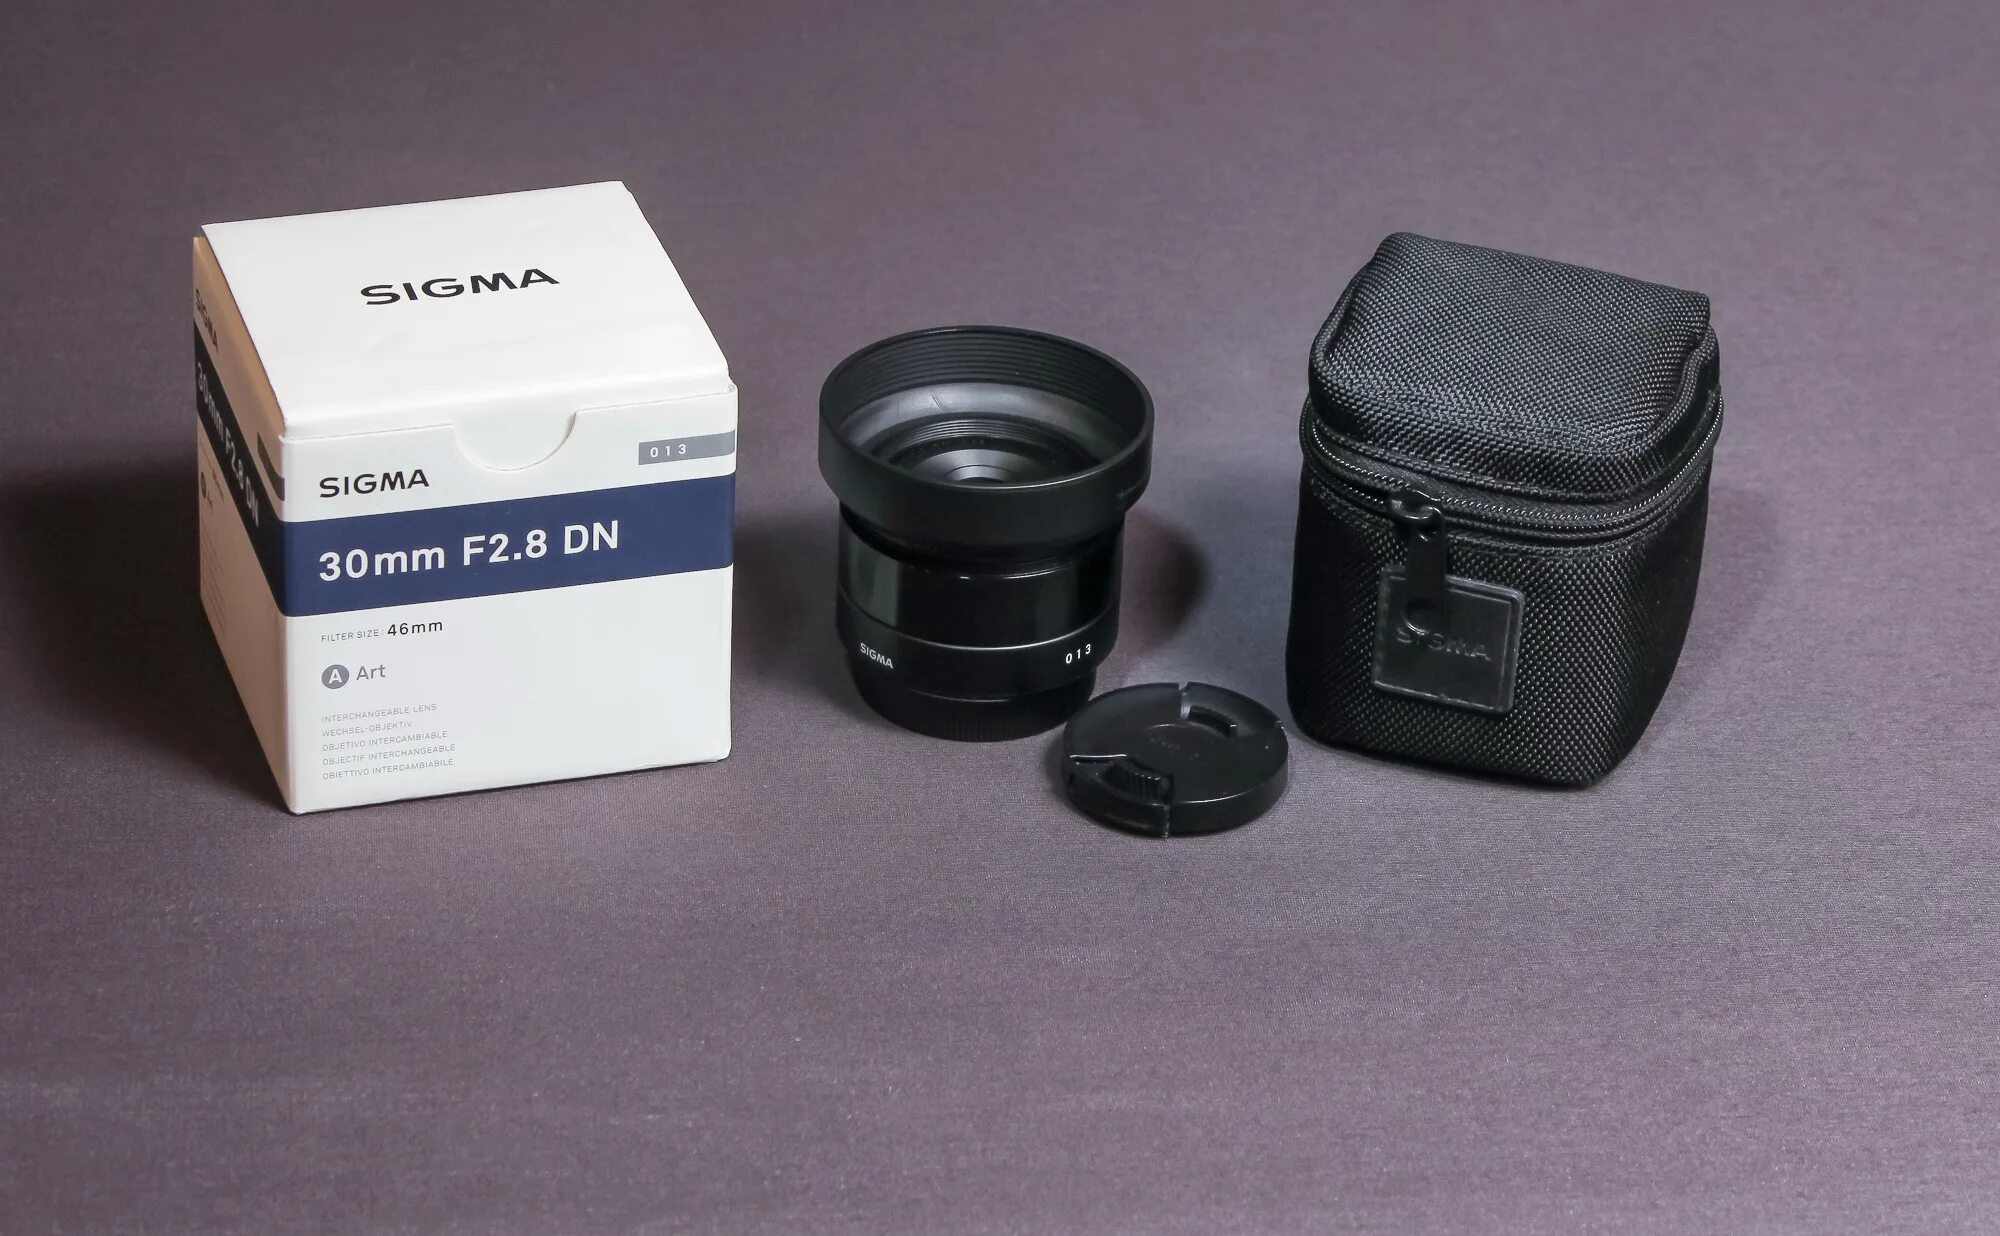 Сигма брал. Sigma af 30mm f/2.8 DN Art Micro 4/3. Sigma 30мм 2.8 на Micro 4/3. Sigma af 30mm f/2.8 ex DN Sony e. Запчасти для объектива Sigma.